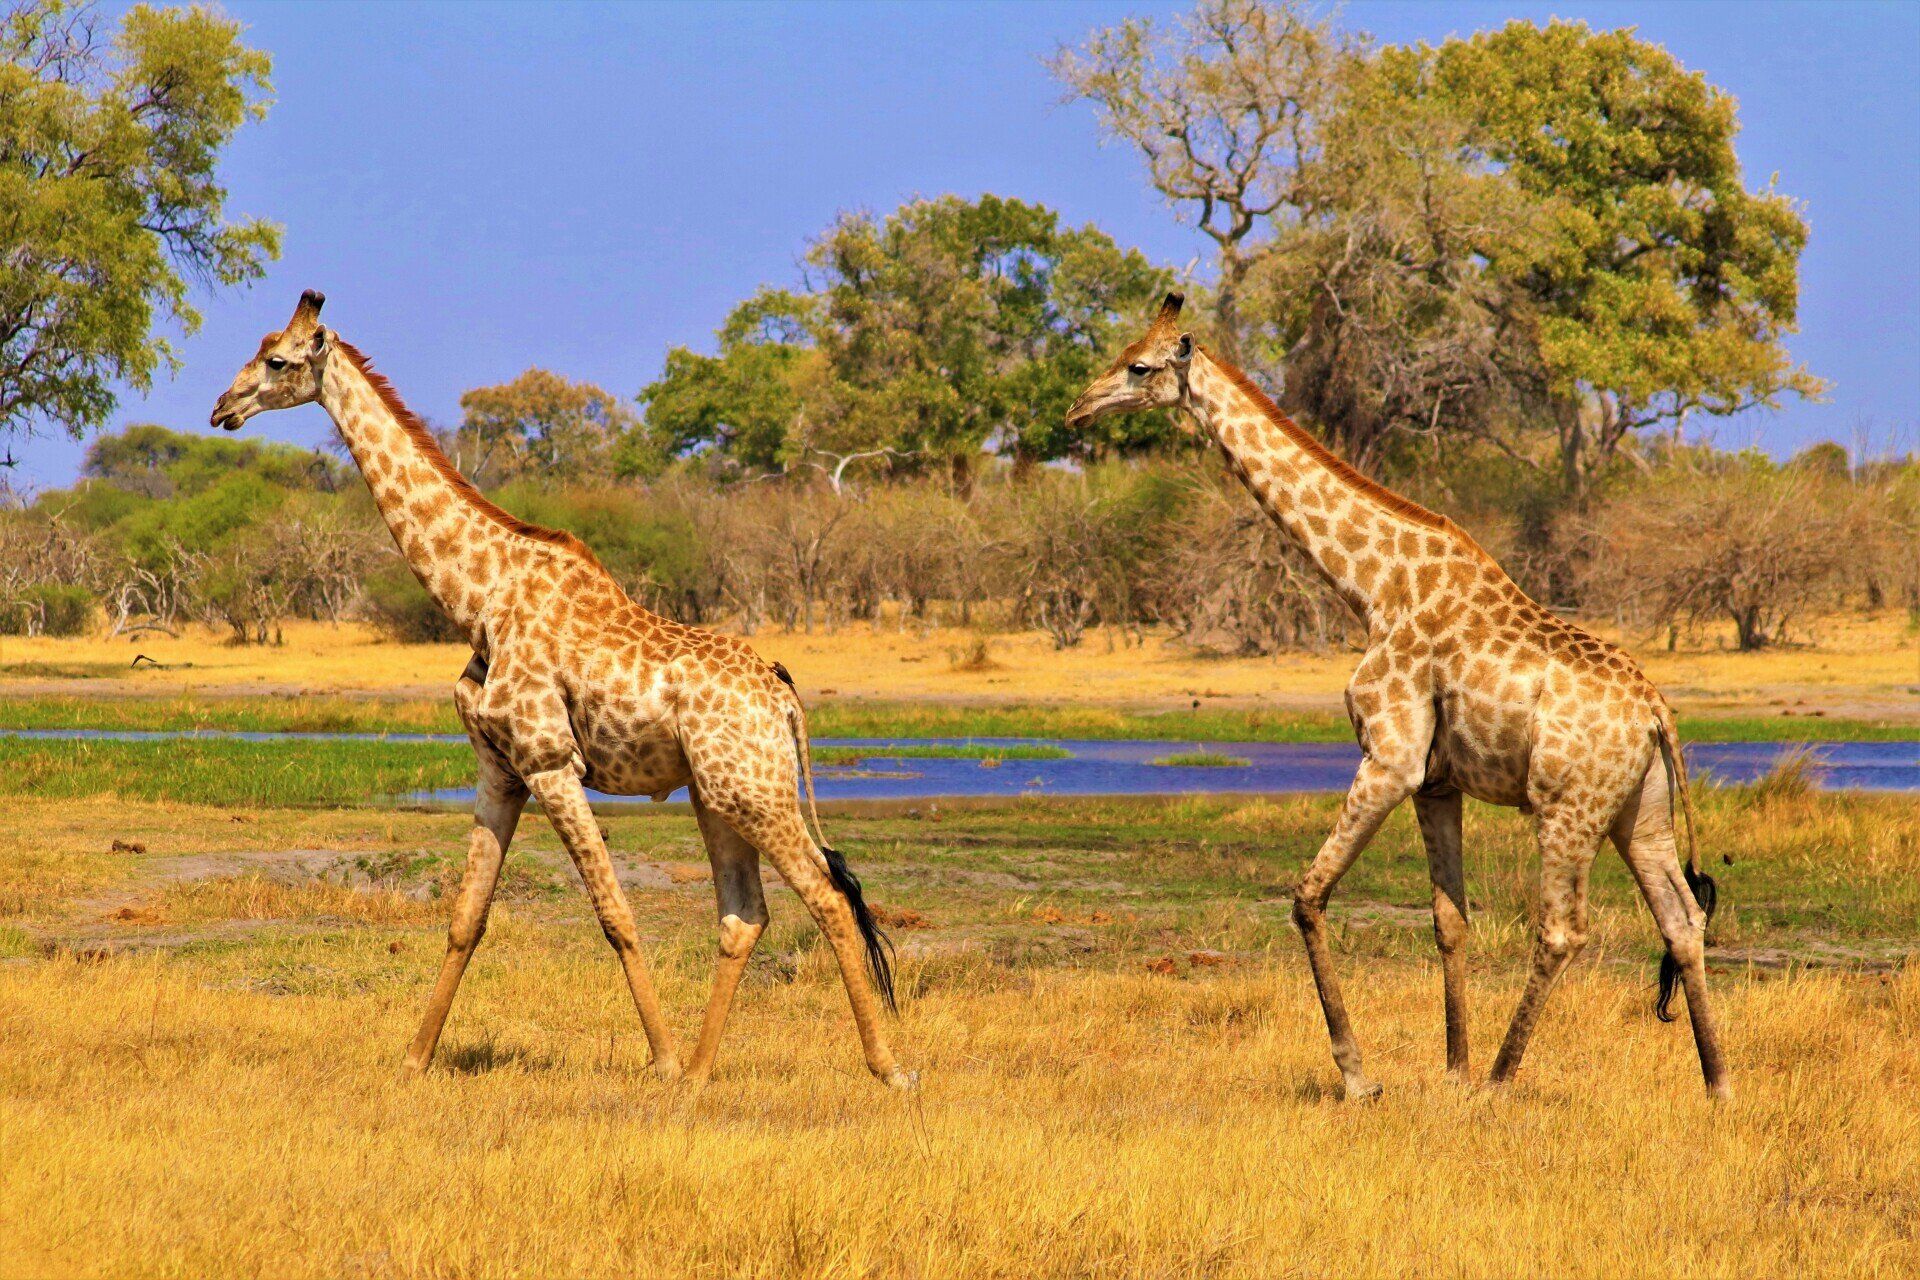 Two giraffes are walking in a field near a body of water.